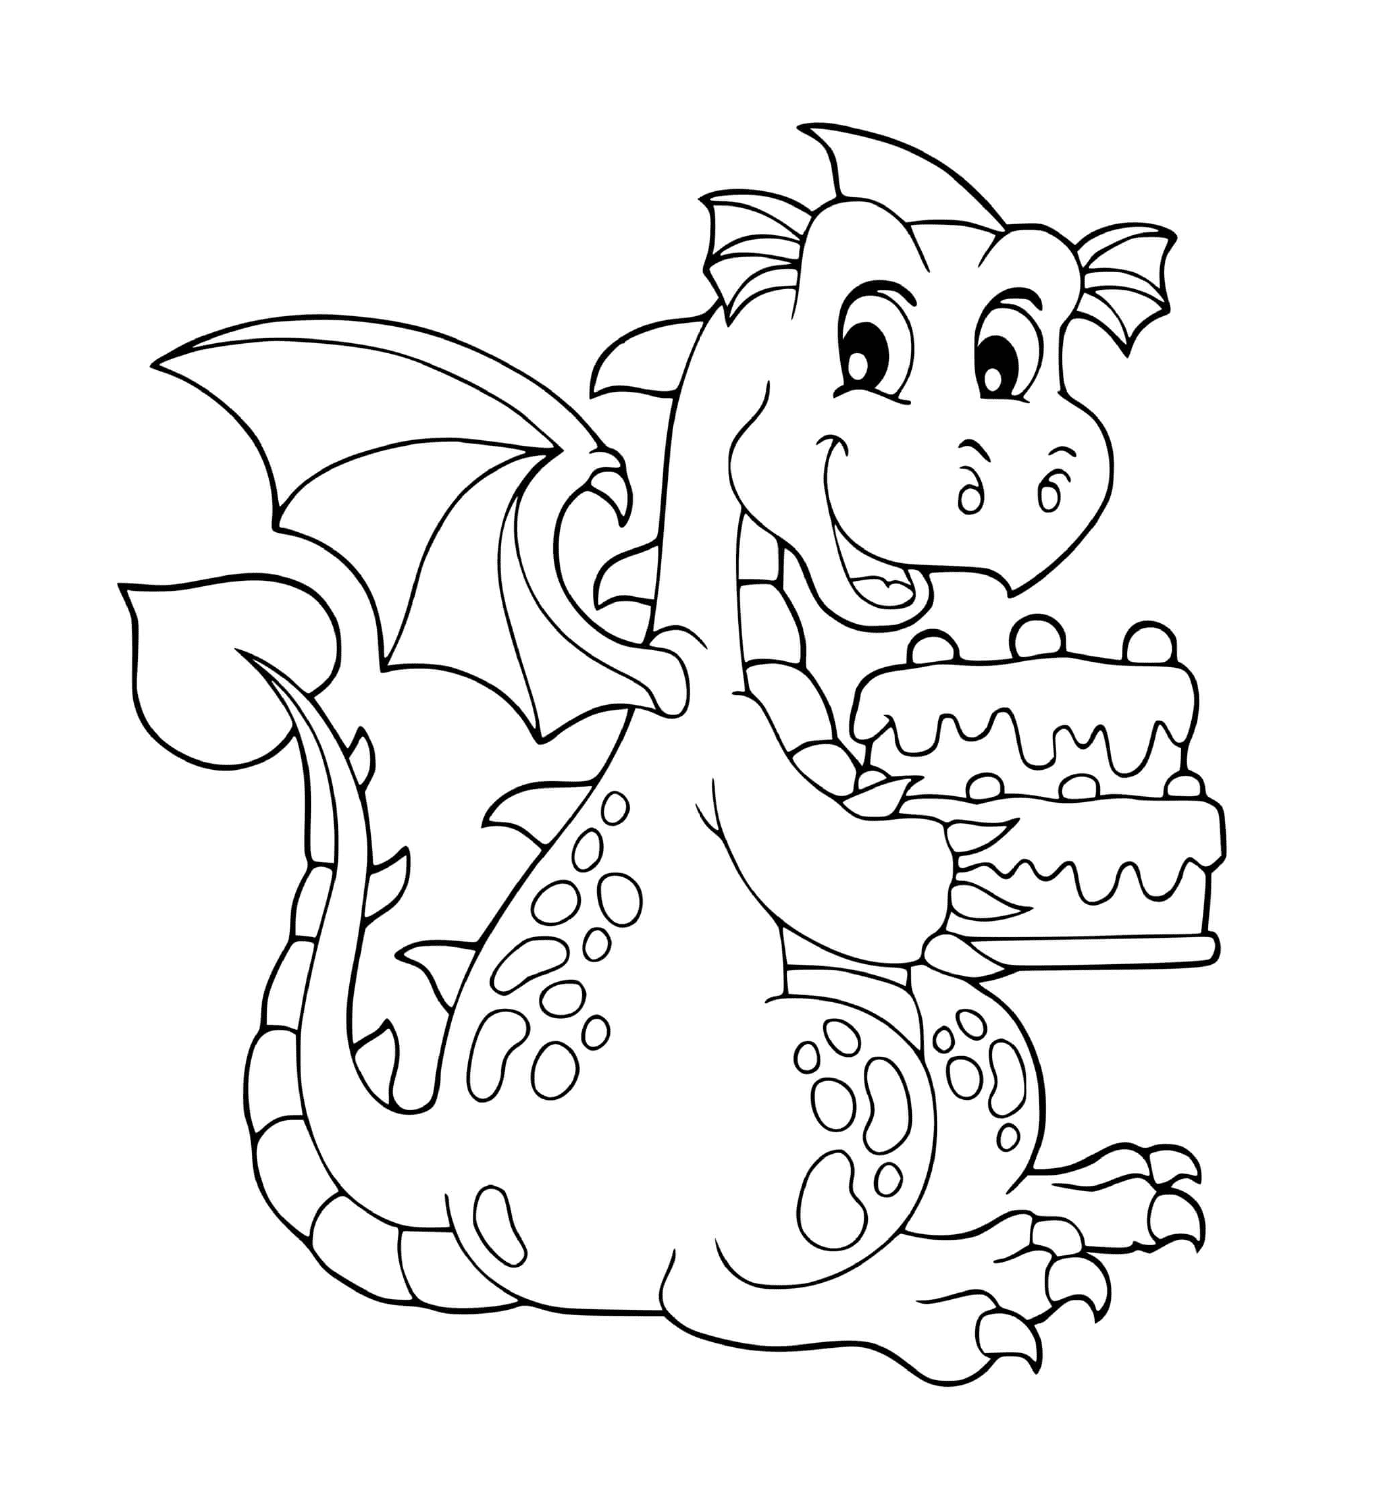 coloriage anniversaire dragon avec un gateau pour sa fete